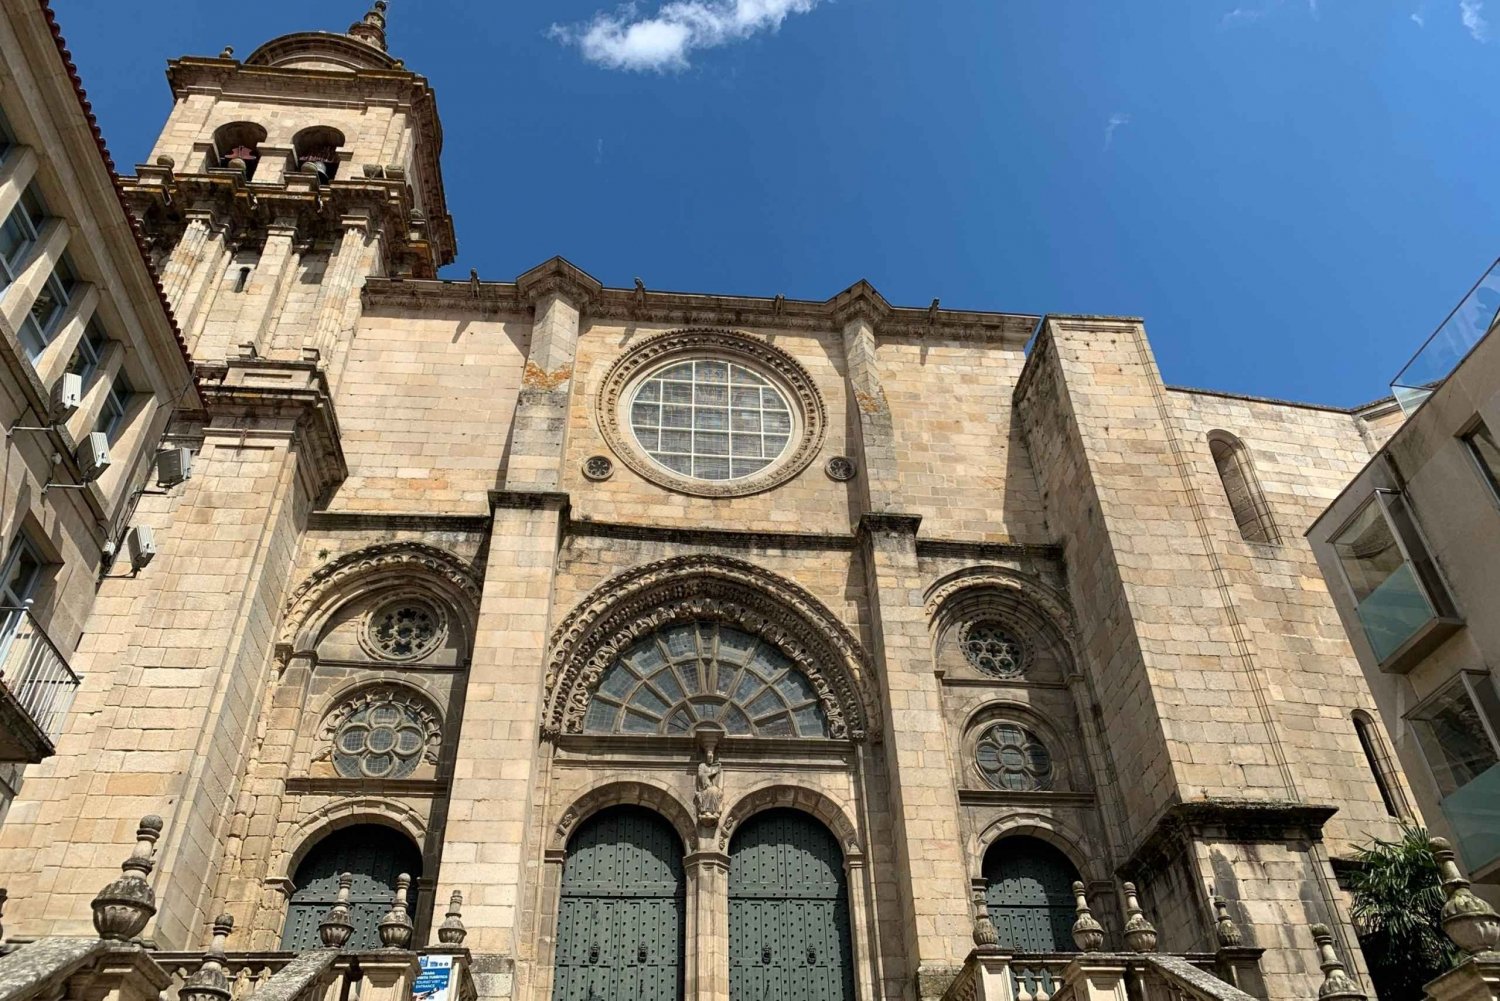 Ourense: Omvisning og billett til Ourense-katedralen